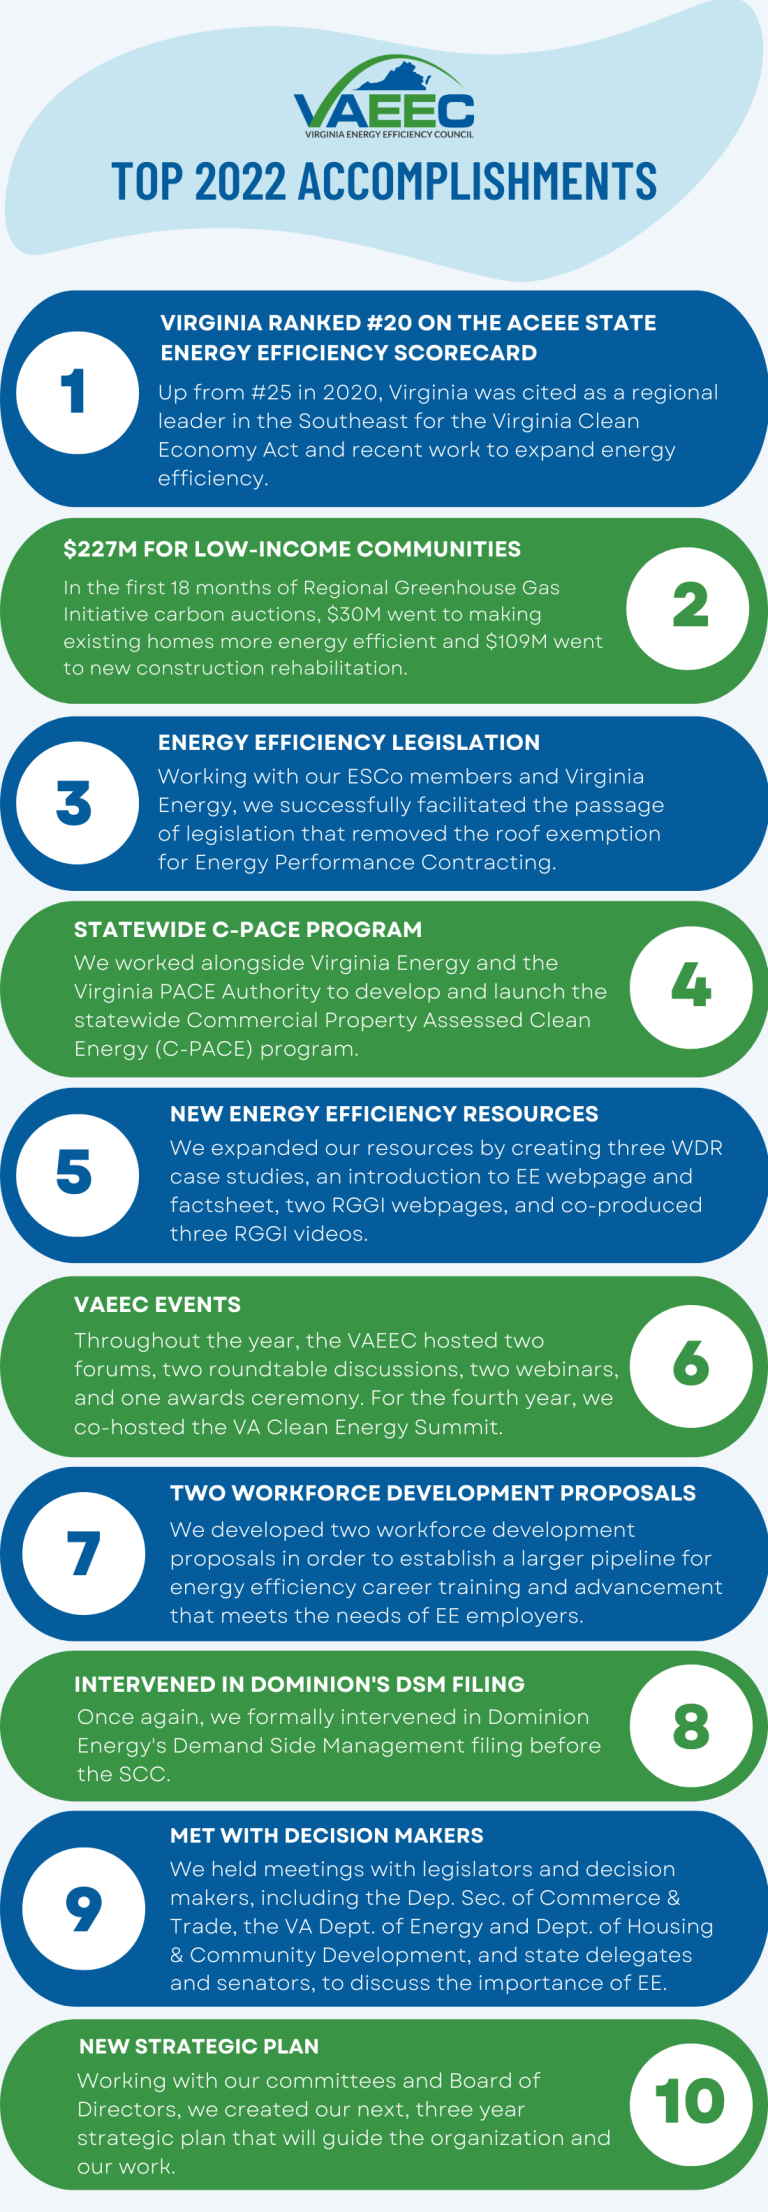 2022-achievements-virginia-energy-efficiency-council